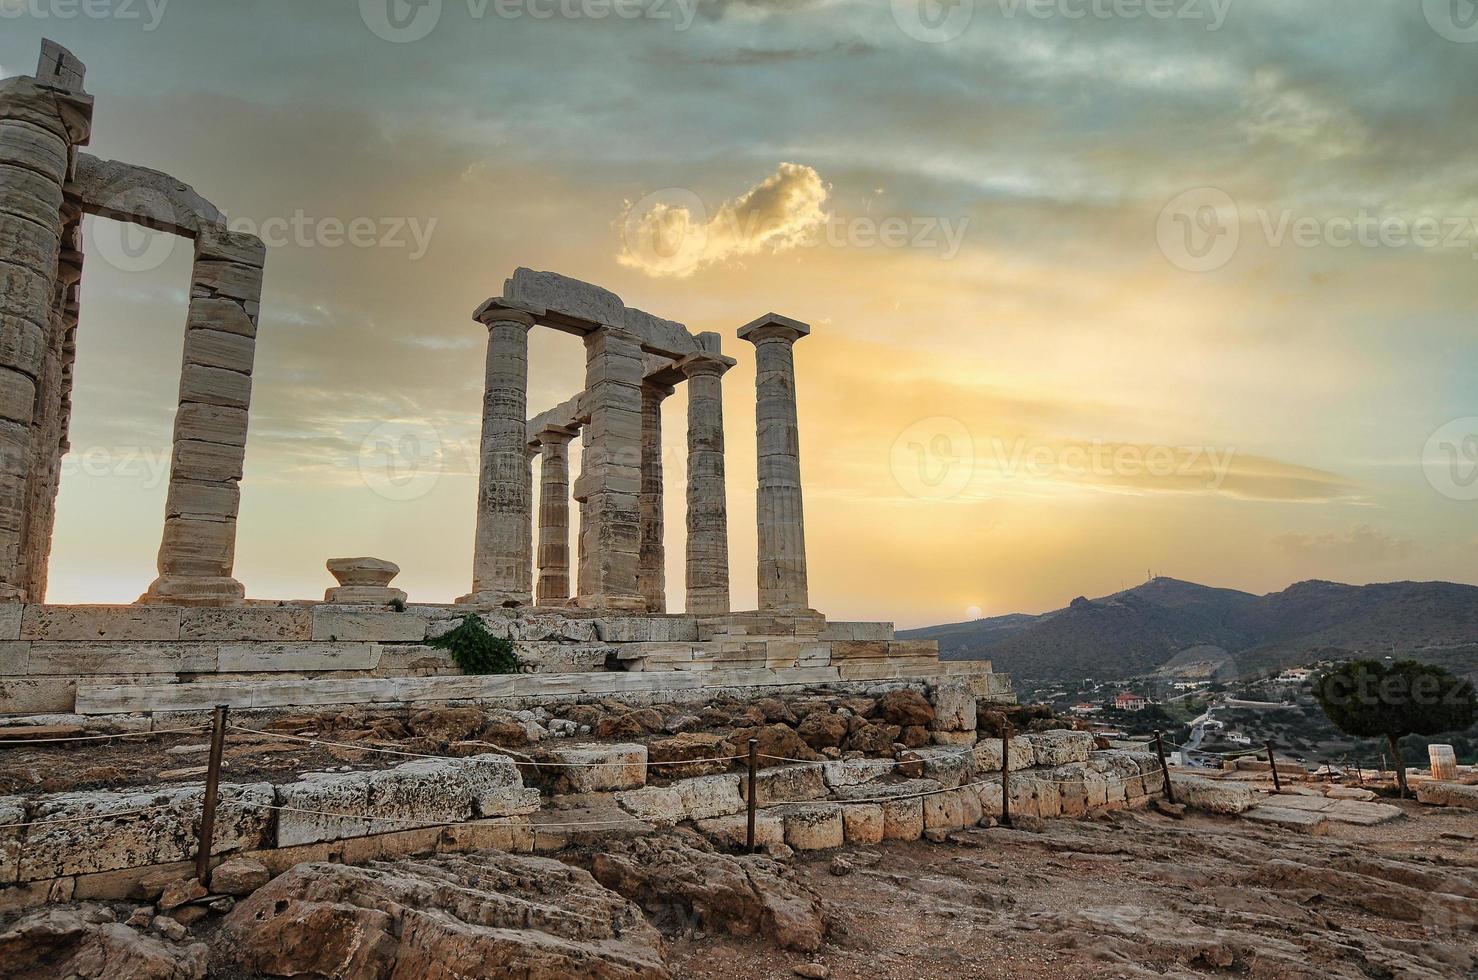 grekland. Cape Sounion - ruinerna av ett antikt grekiskt tempel i Poseidon före solnedgången foto